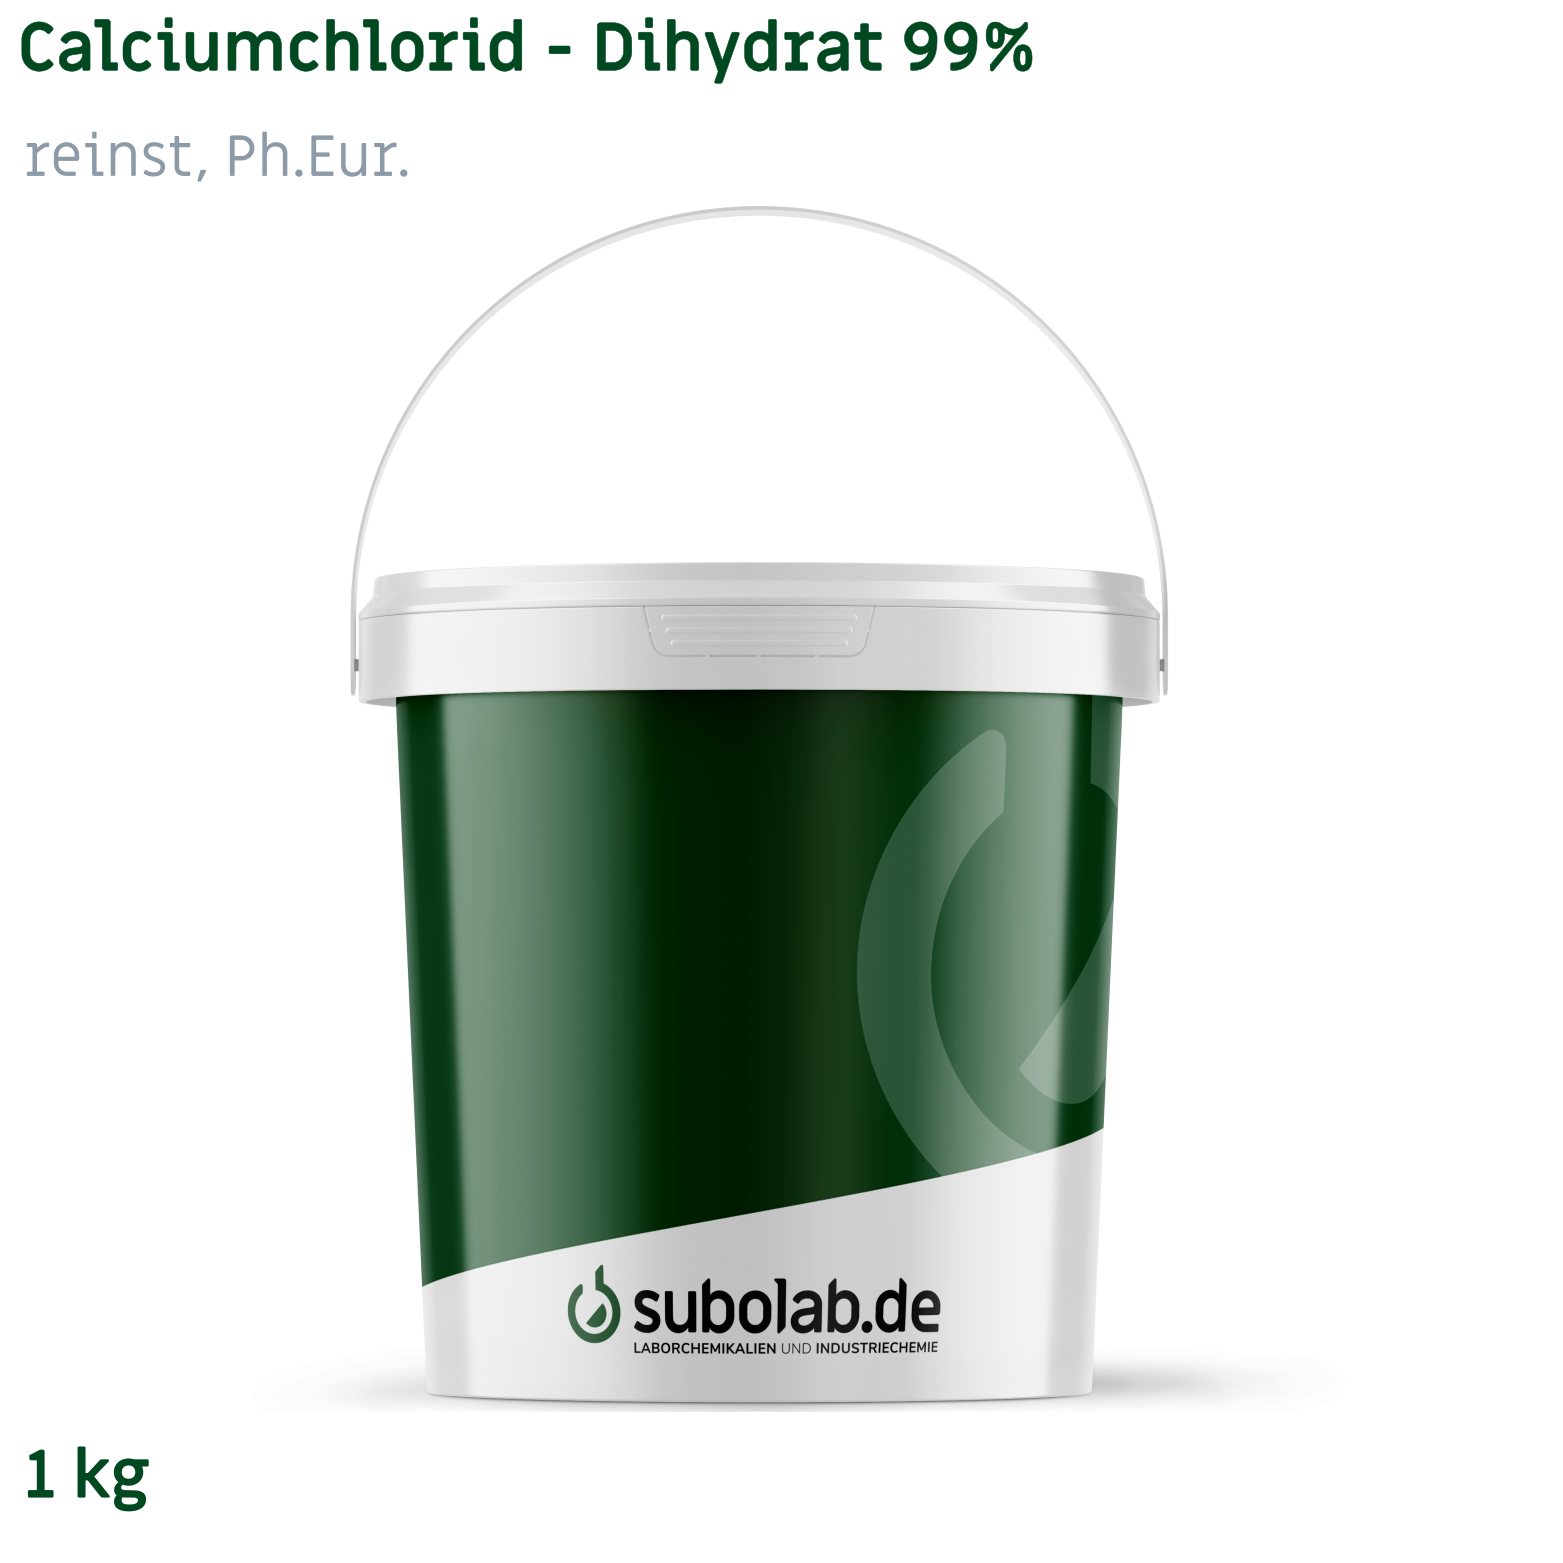 Bild von Calciumchlorid - Dihydrat 99% reinst, Ph.Eur. (1 kg)